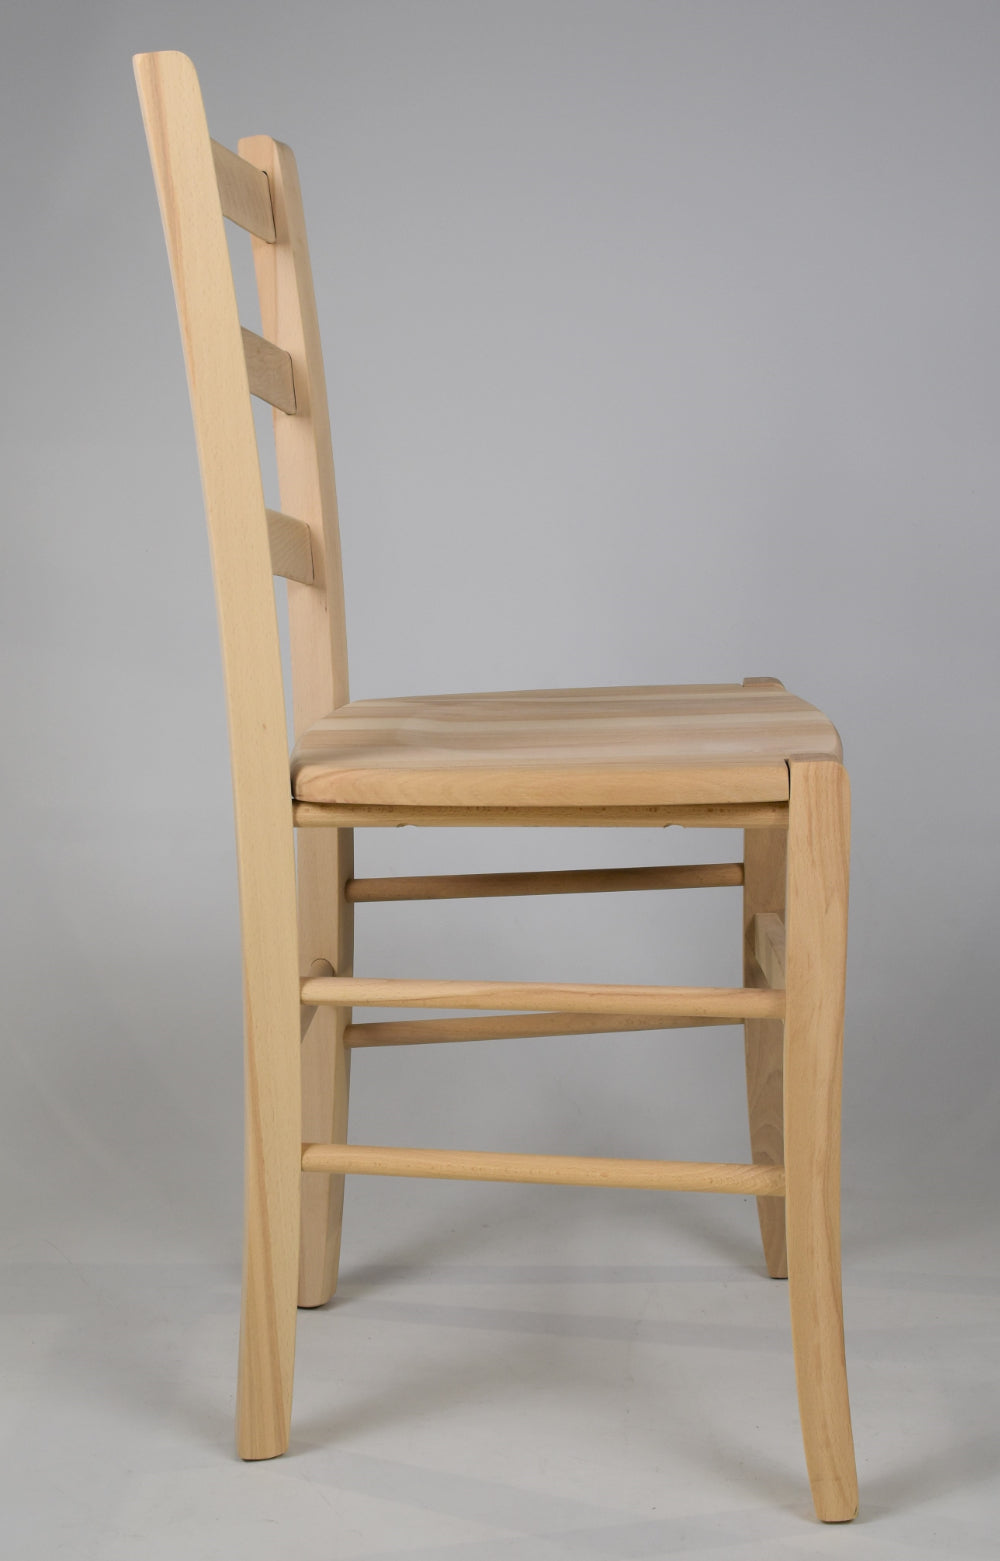 Tommychairs - Set 4 sillas de Cocina y Comedor  Venezia, estructura en madera de haya lijada, no tratada, 100% natural y asiento en madera